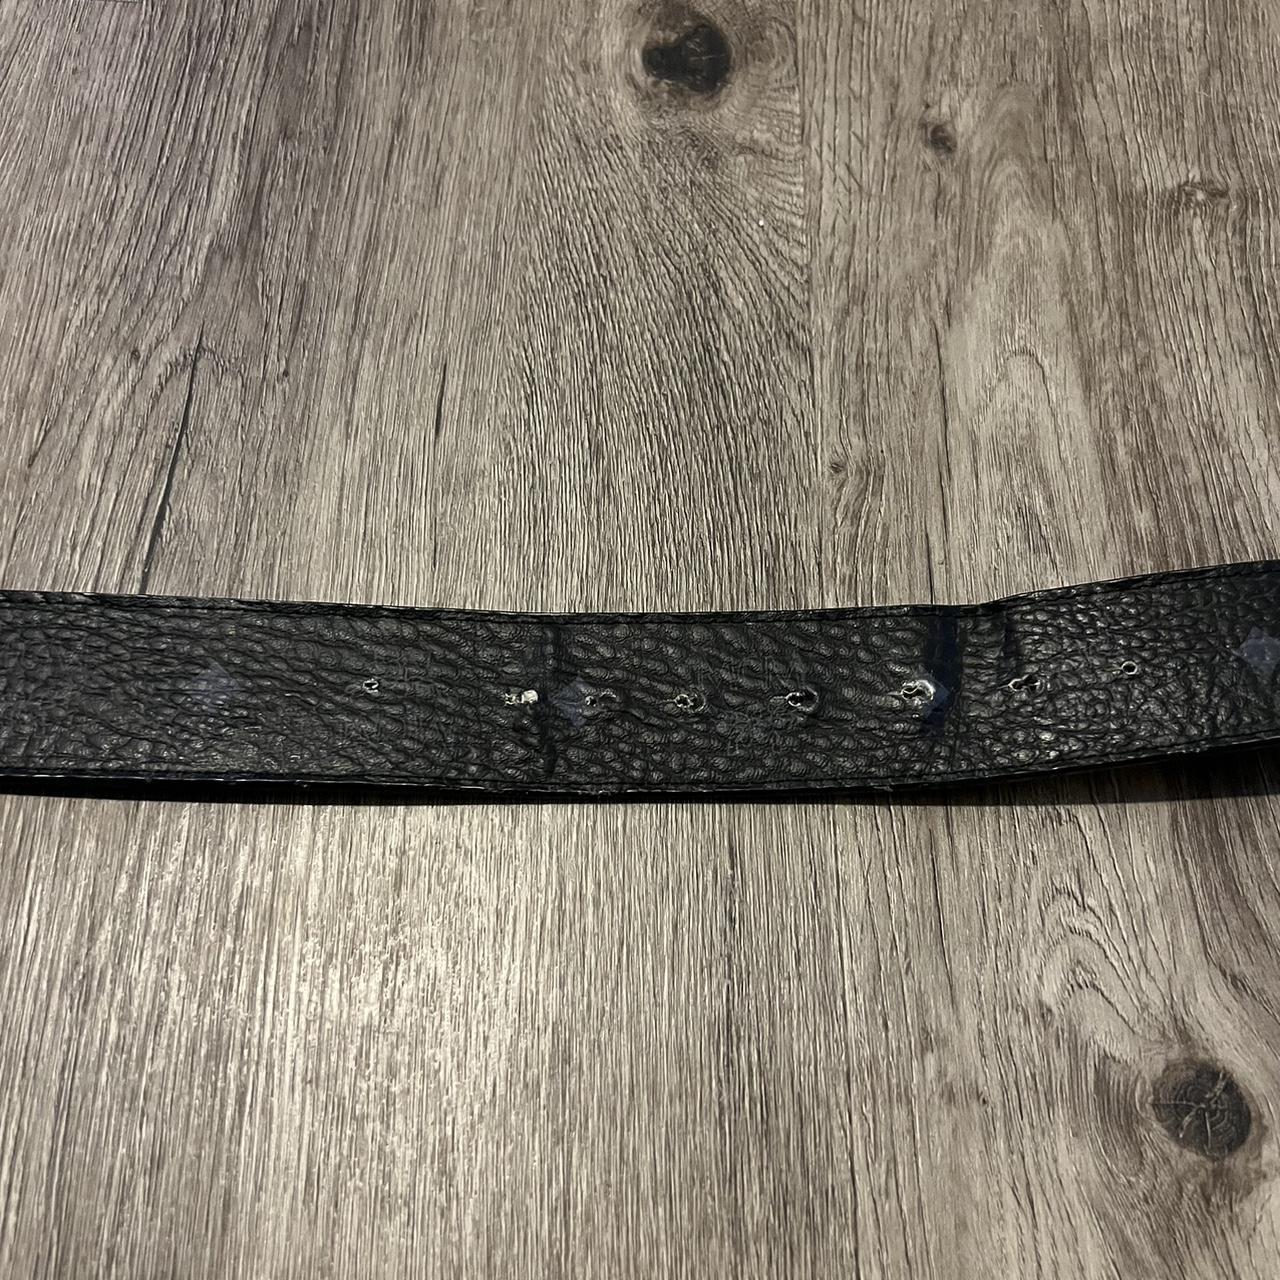 Black & Blue MCM belt #MCM #belt 45 inches not - Depop